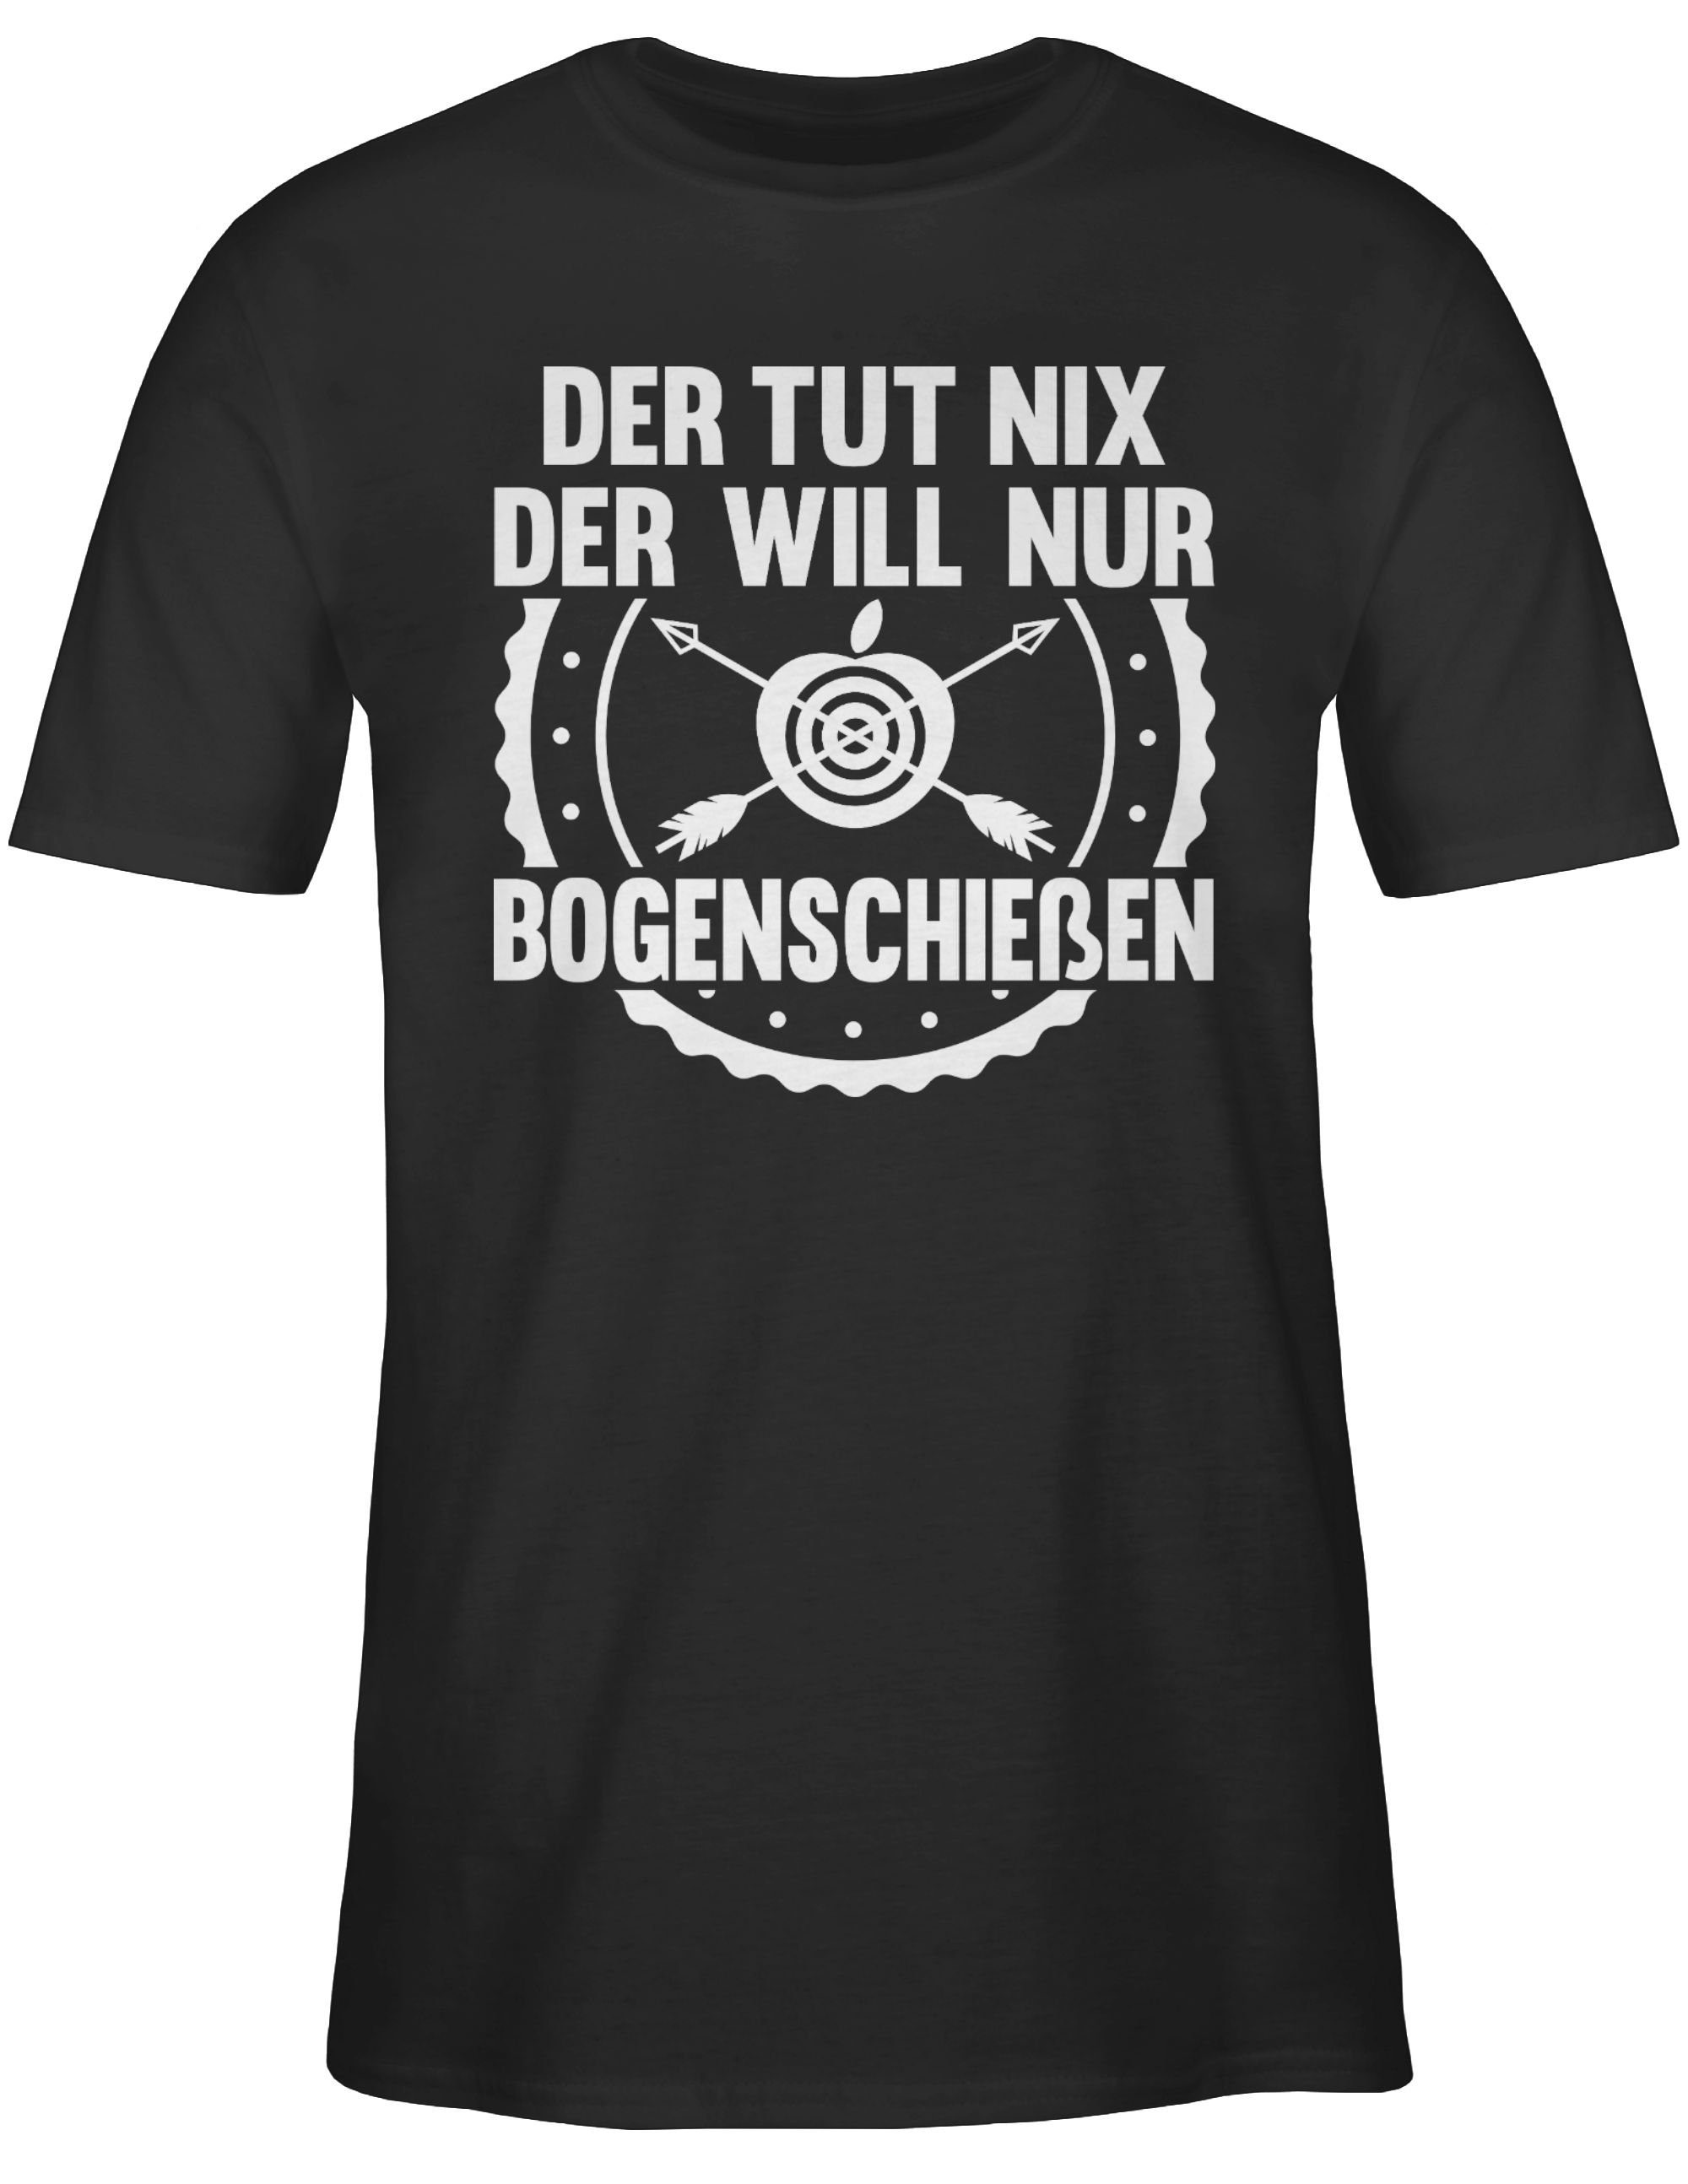 nur 1 Bogenschießen T-Shirt der will Shirtracer Statement tut nix Sprüche mit Spruch Der Schwarz